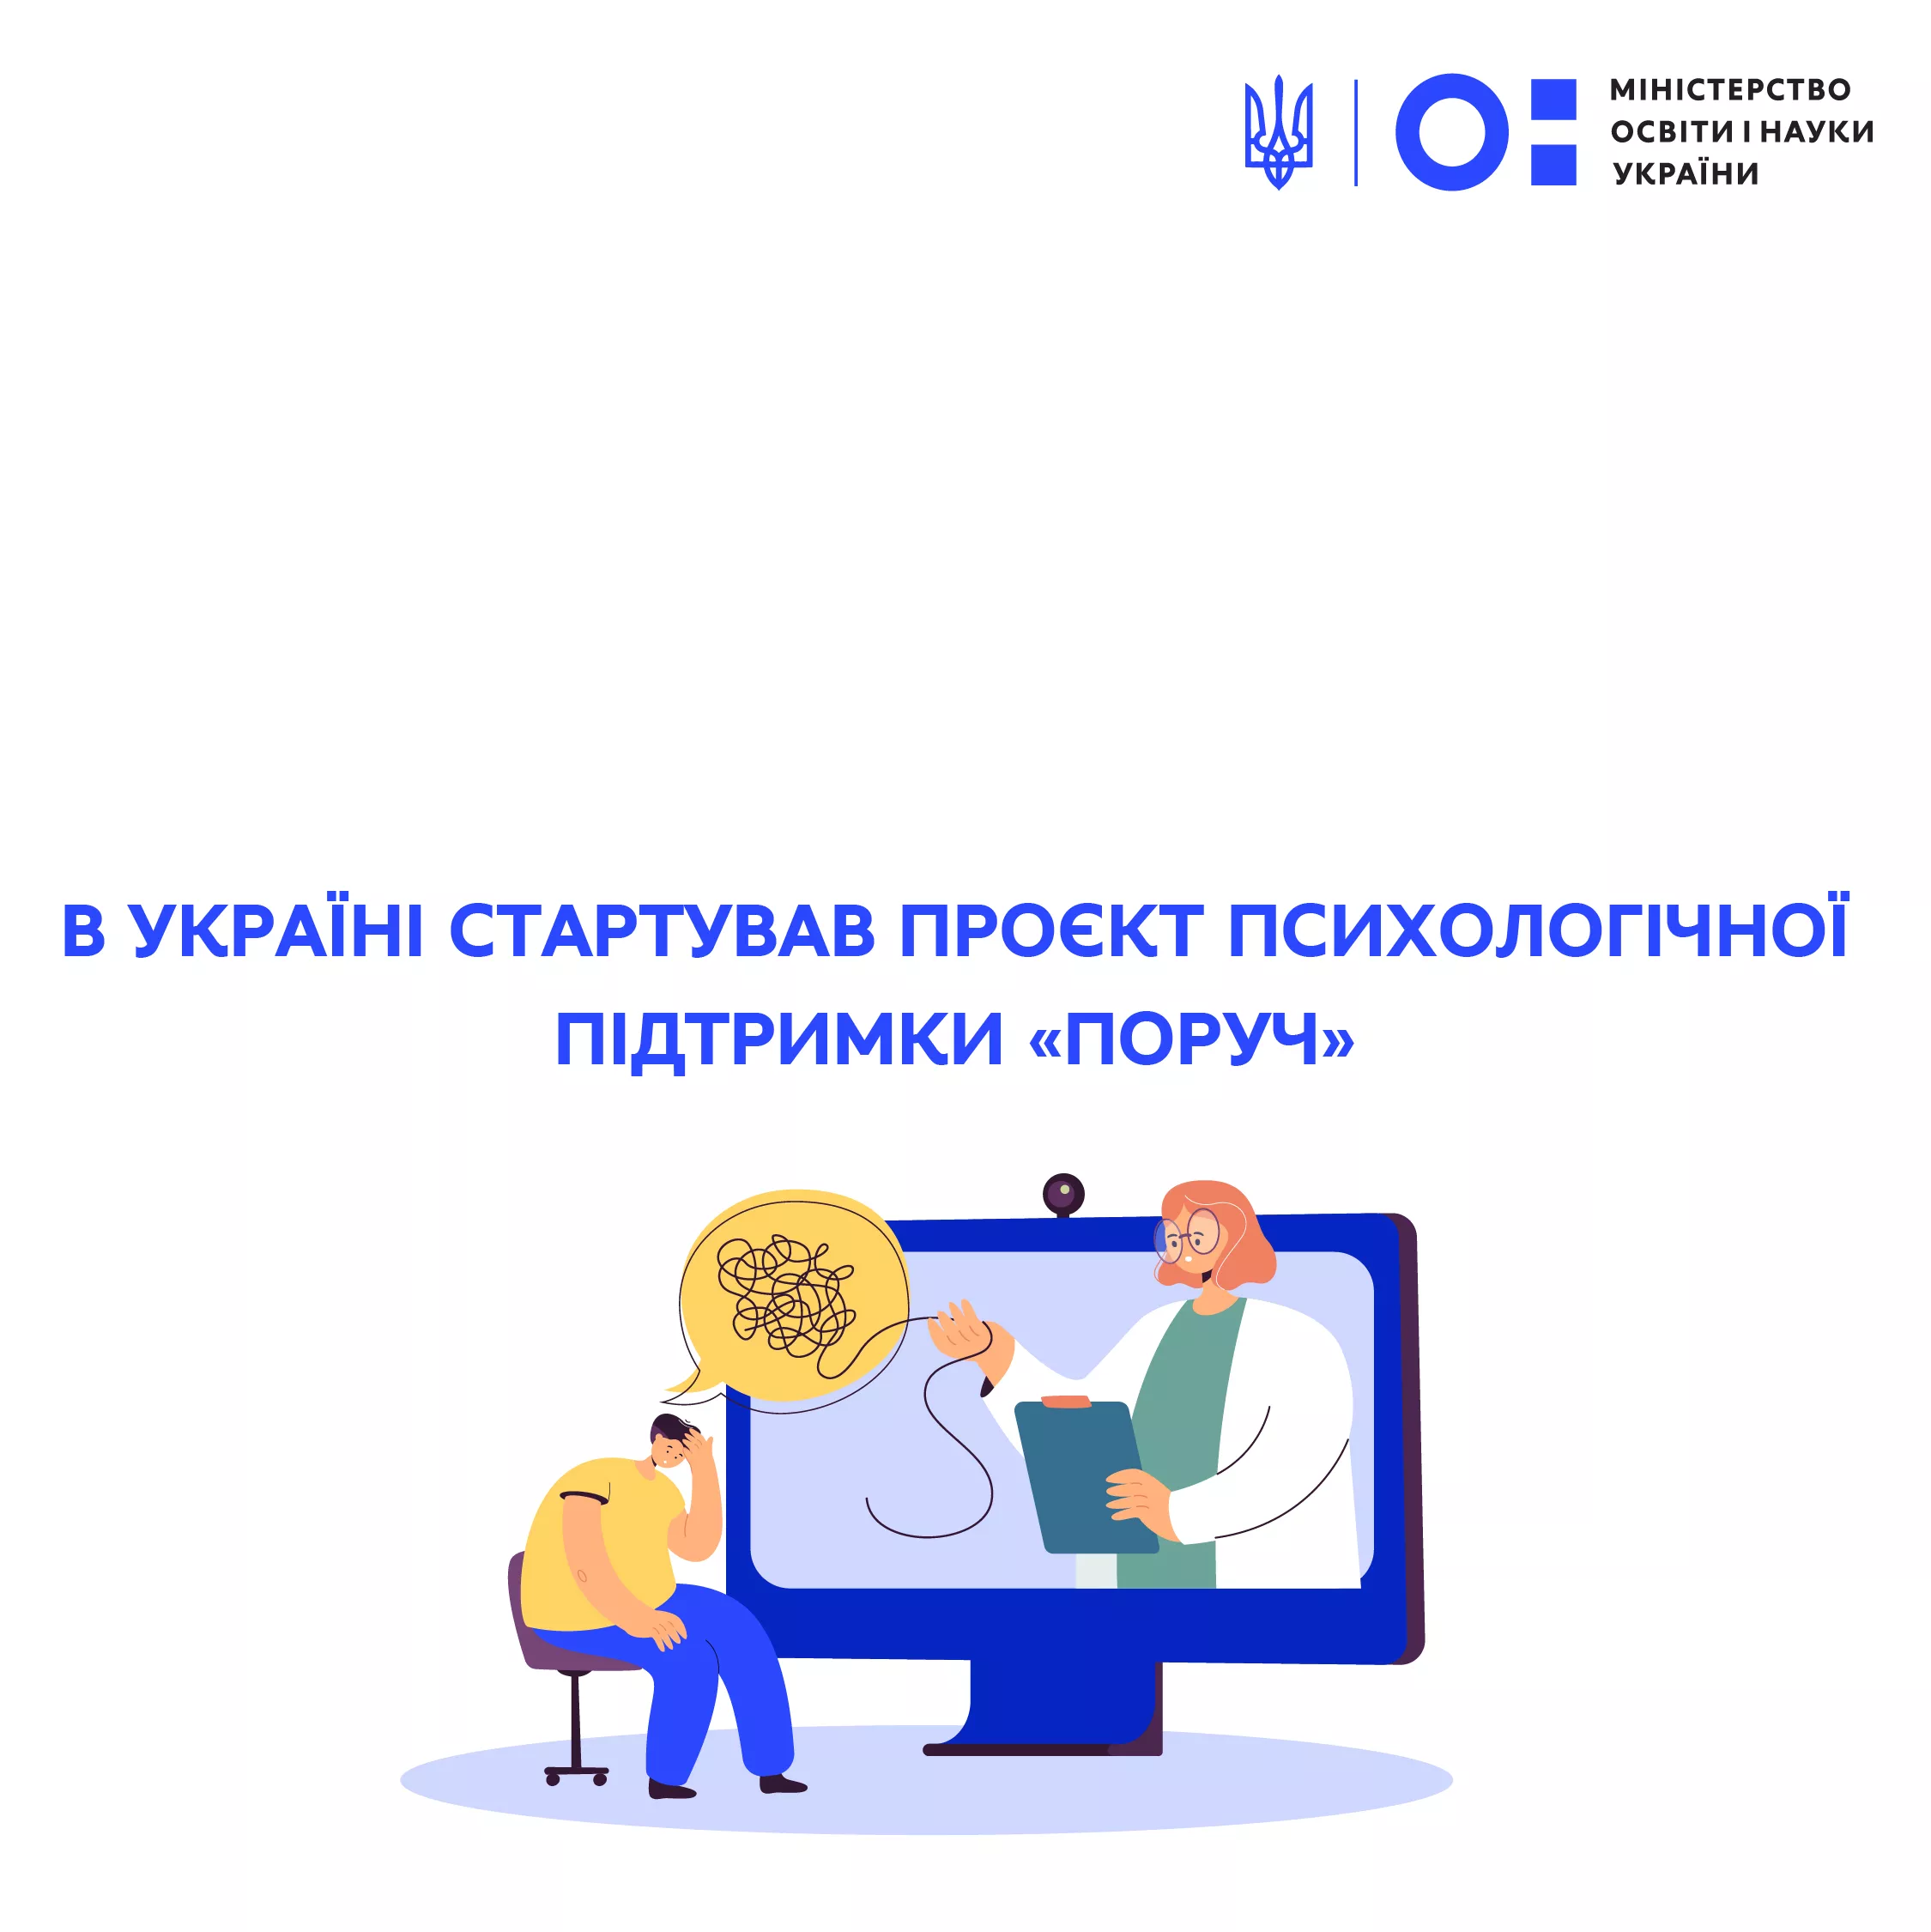 В Украине стартовал проект бесплатной психологической поддержки для детей и взрослых